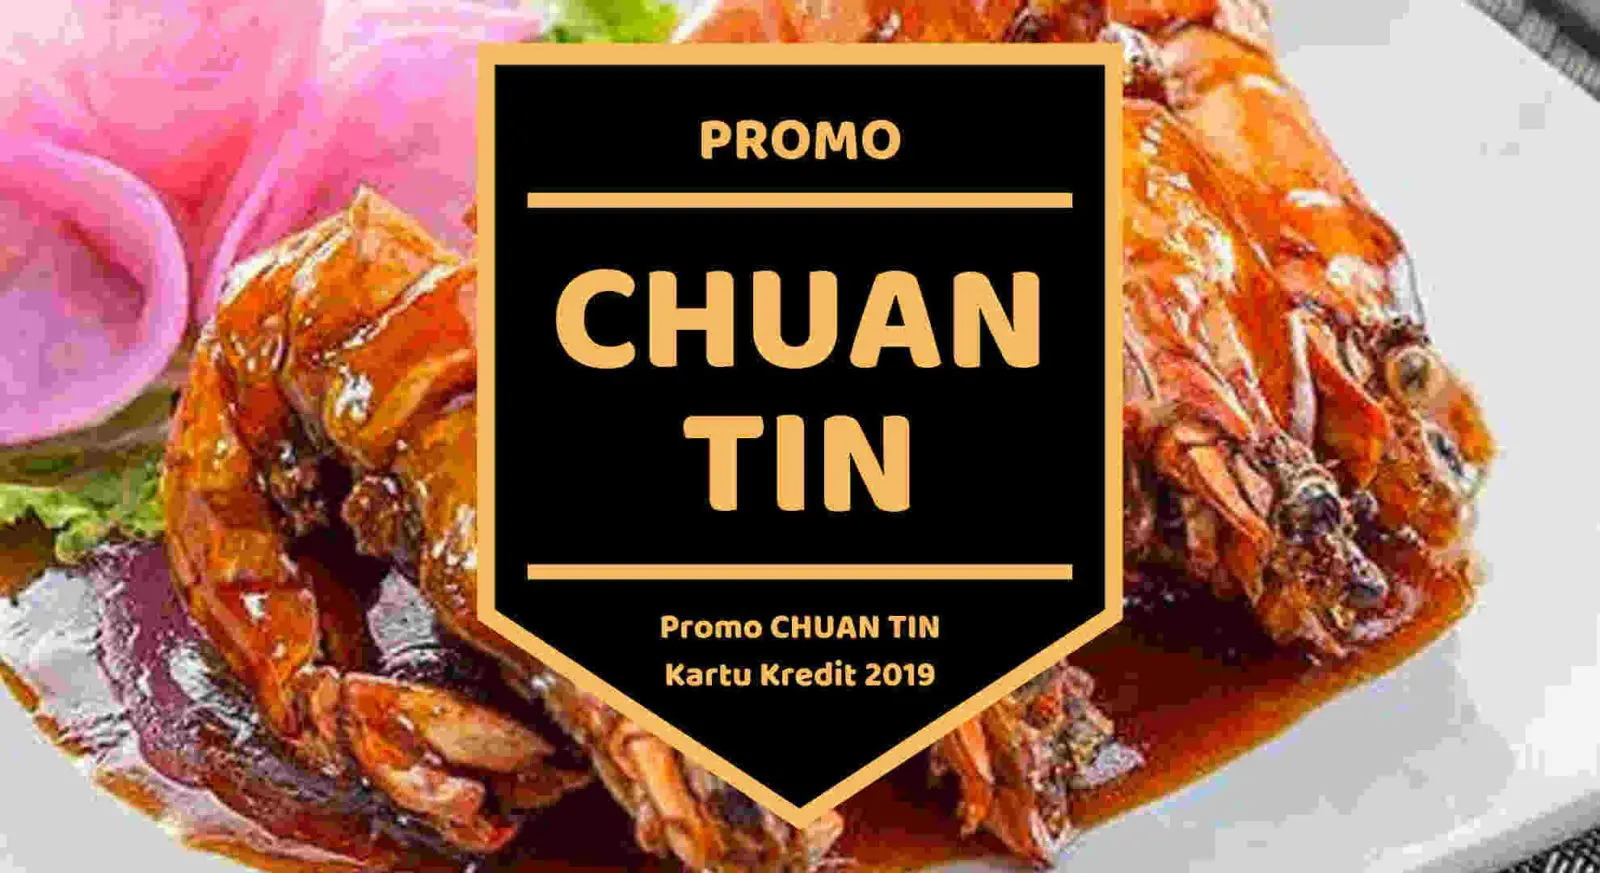 Promo Chuan Tin